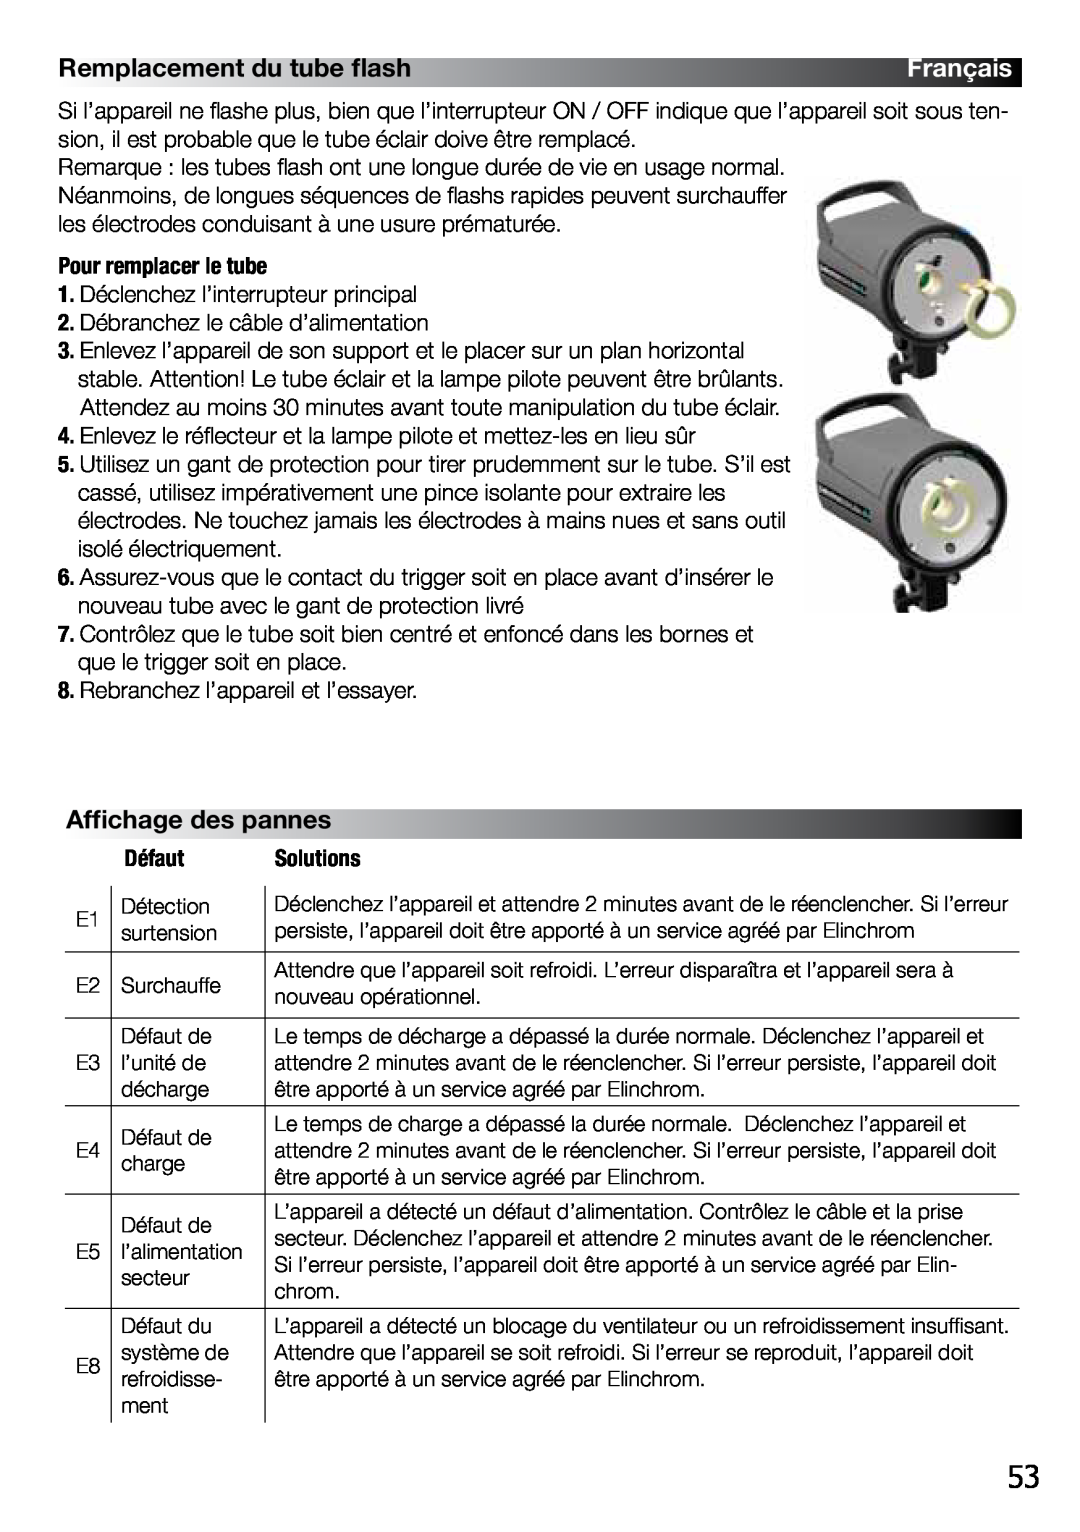 Elinchrom 2 IT, 4 IT operation manual Remplacement du tube flash, Affichage des pannes, Français 